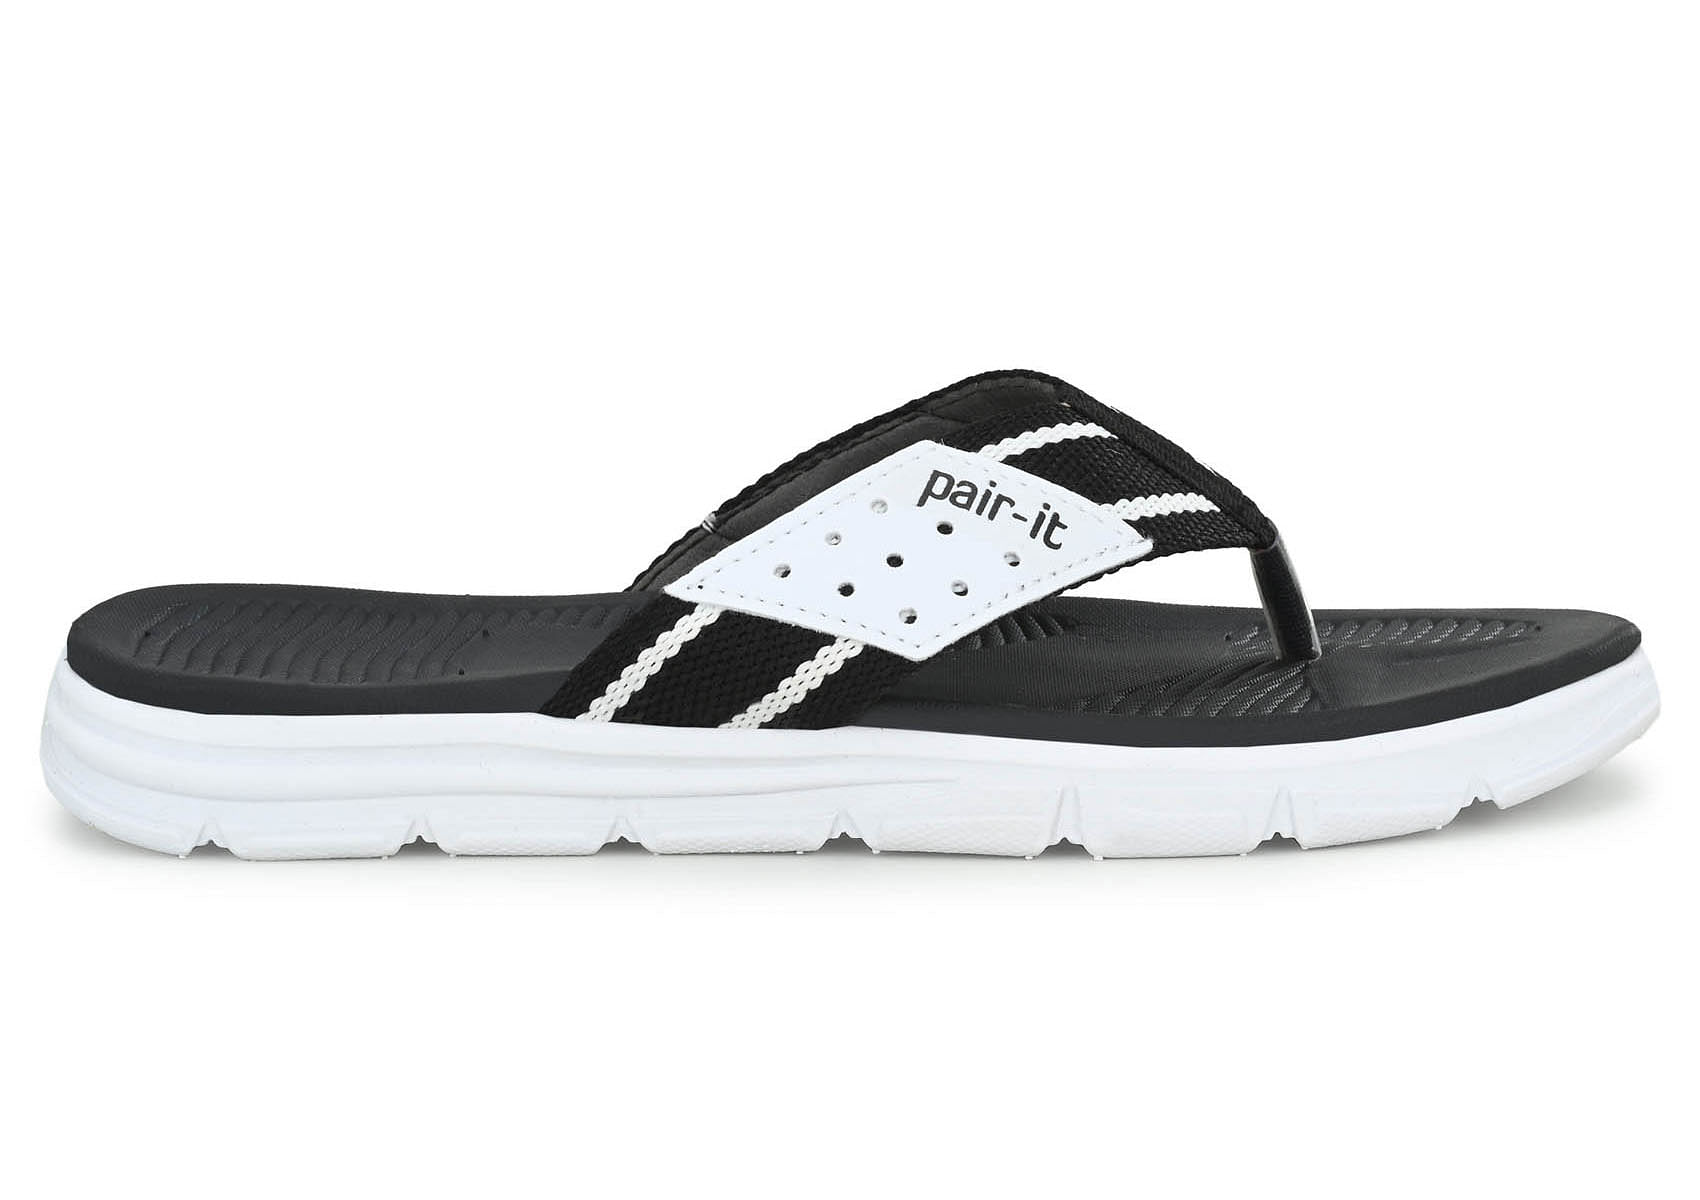 Pair-it Men's Rubberised EVA Slippers-LZ-Slippers118-Black/White